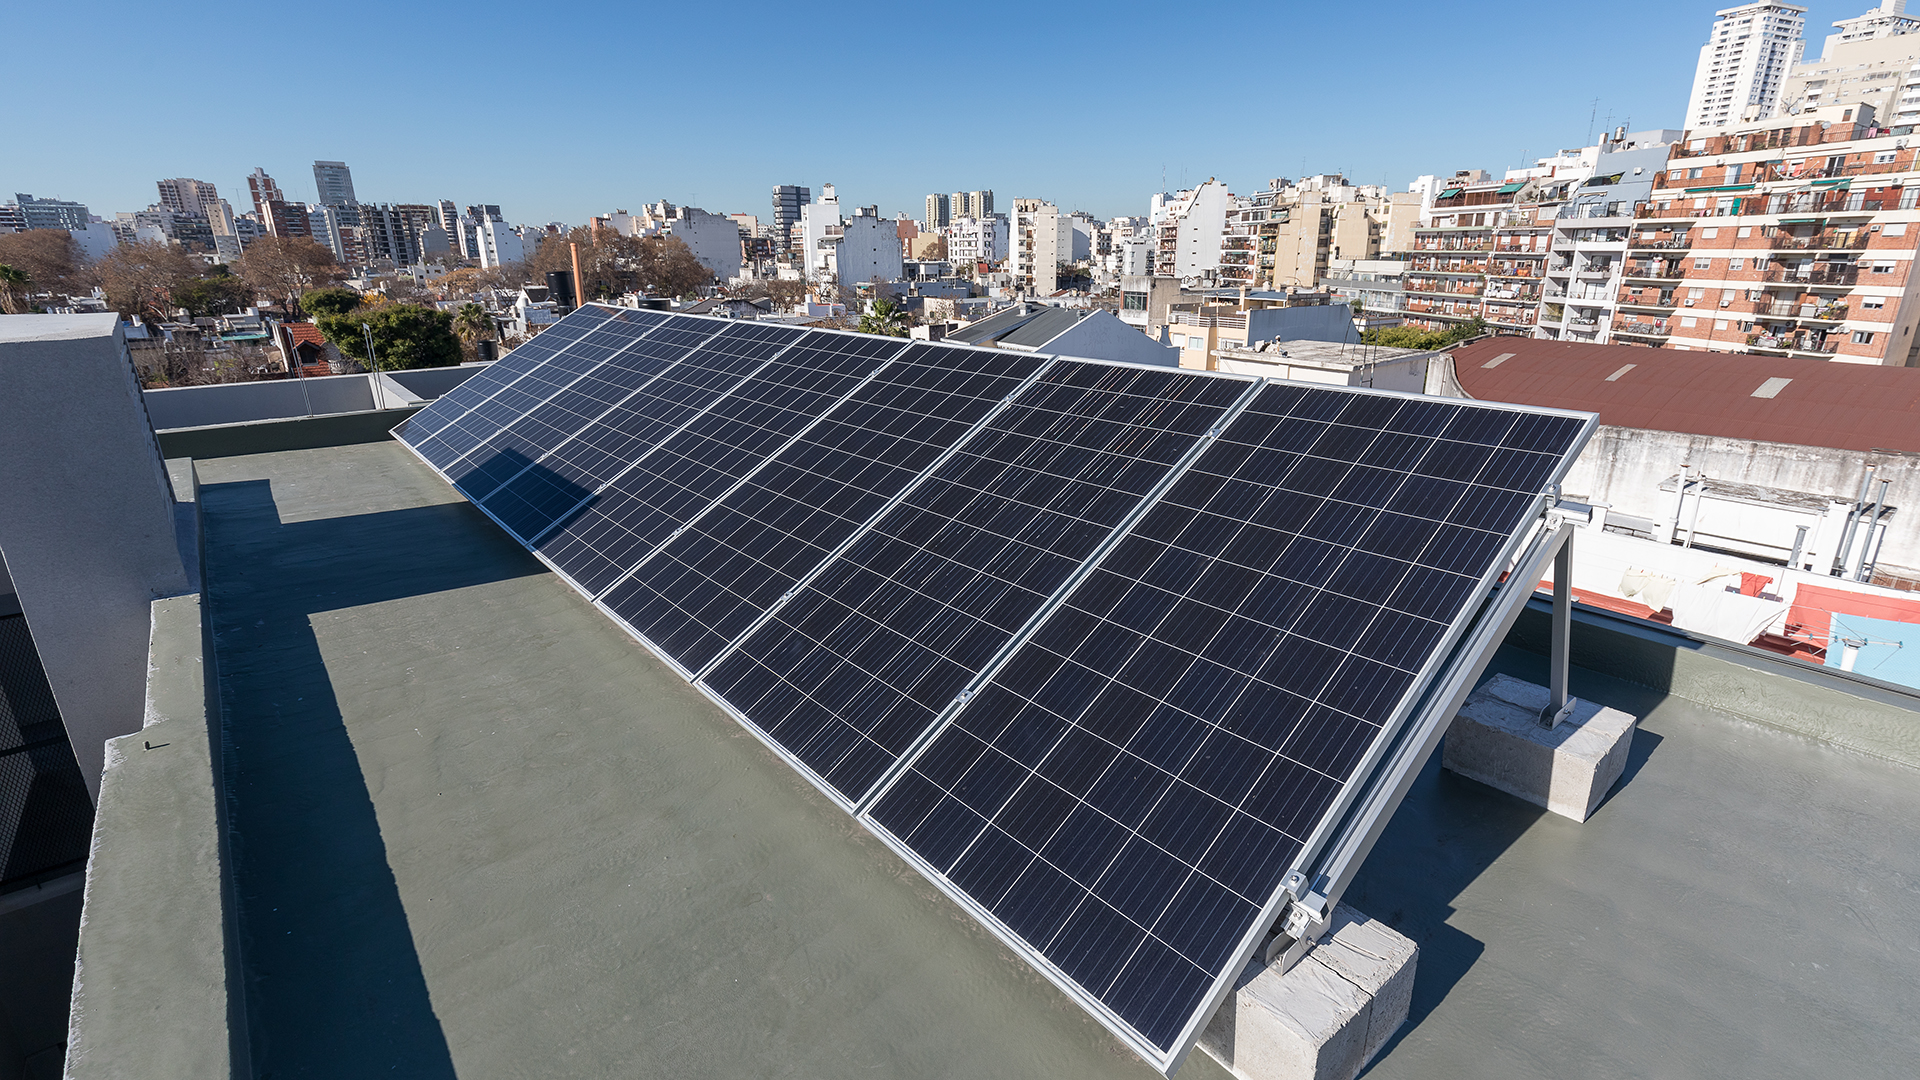 Cada vez se observan más paneles solares en los techos de las edificaciones